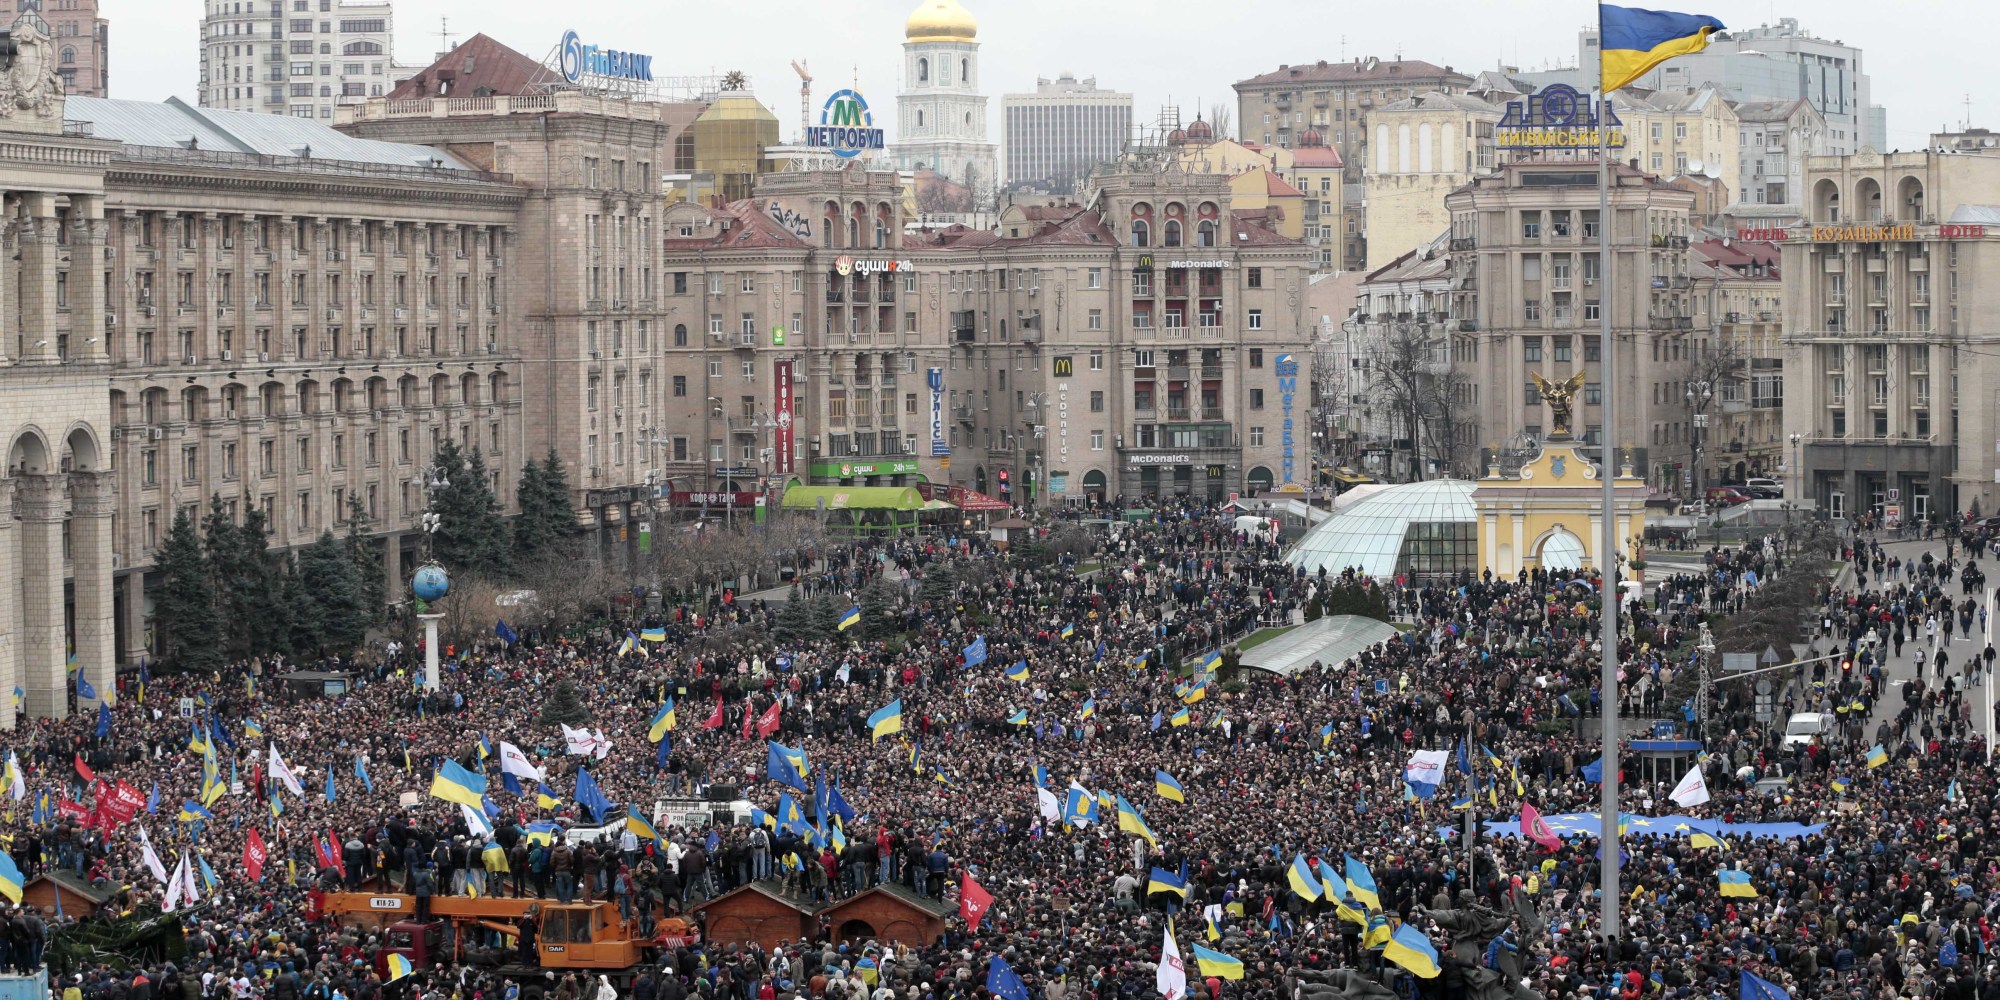 Kiev Revolution #23